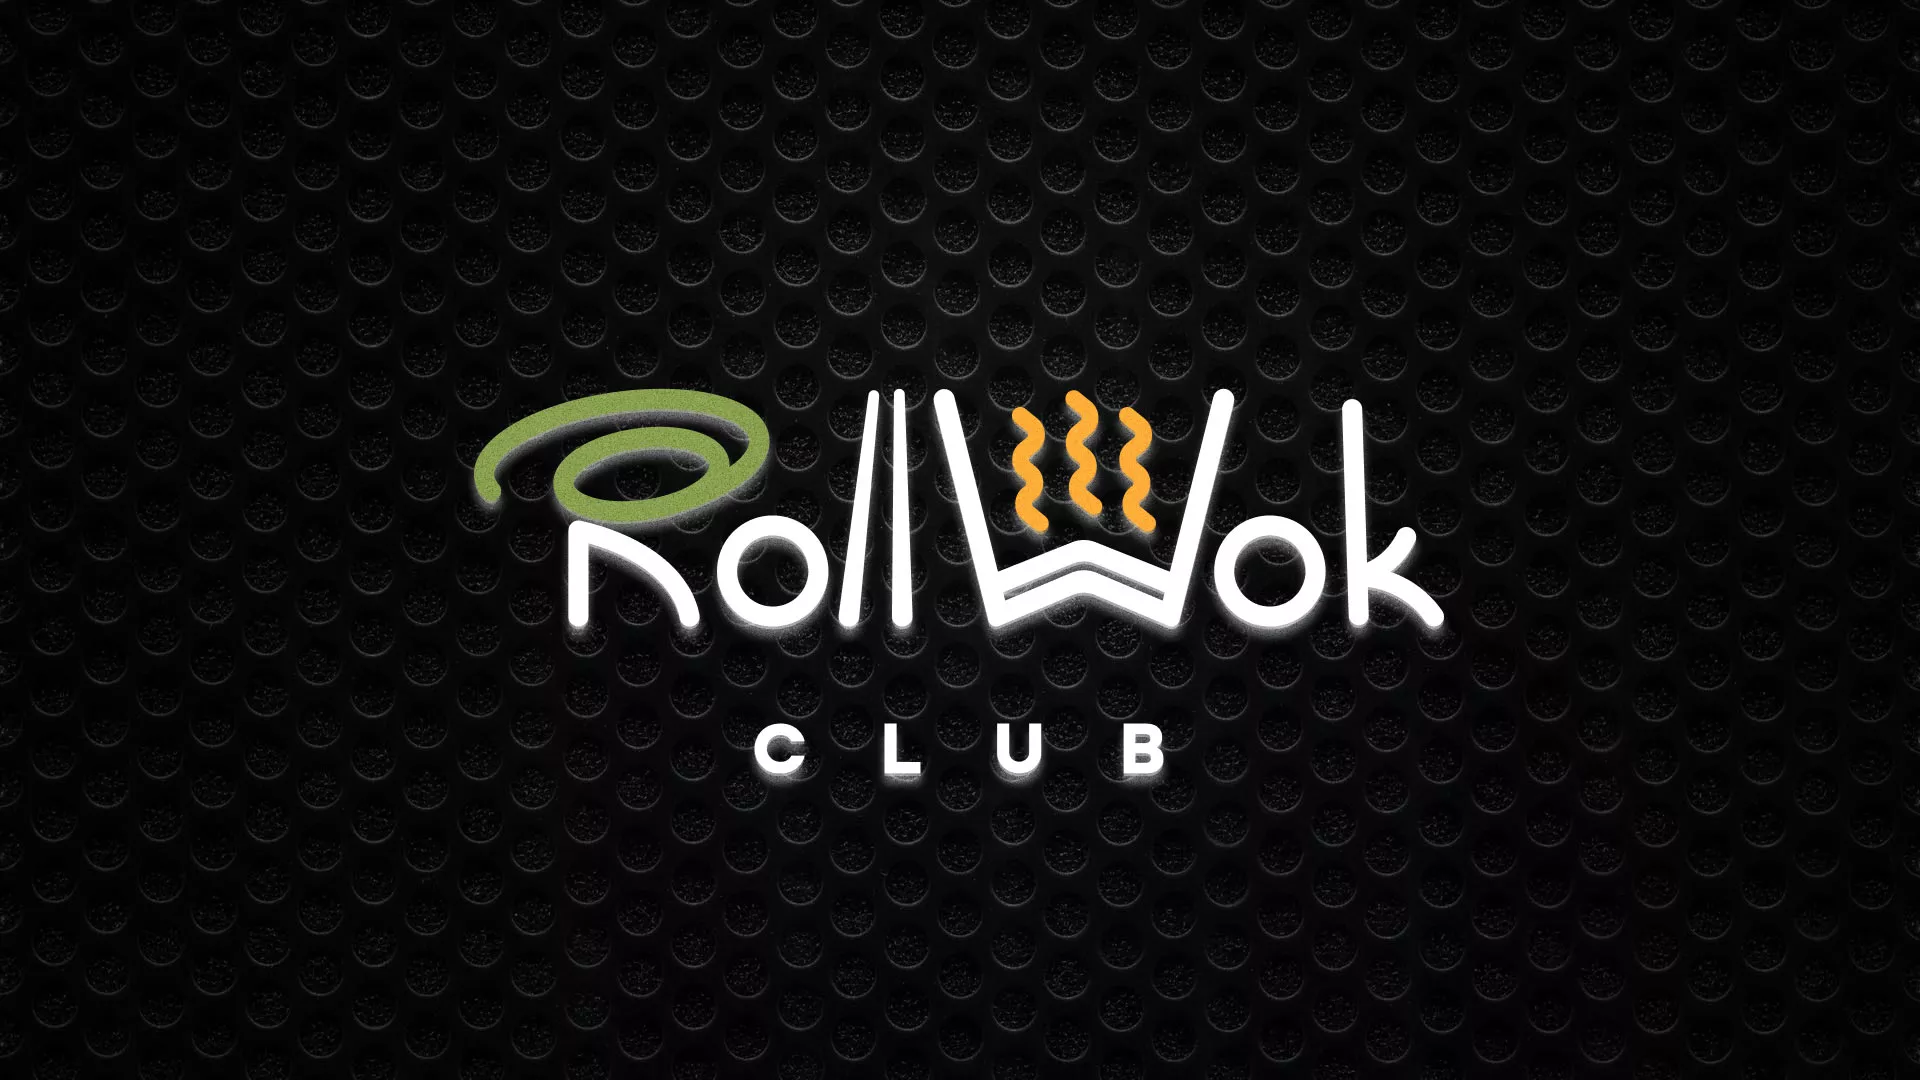 Брендирование торговых точек суши-бара «Roll Wok Club» в Ялте